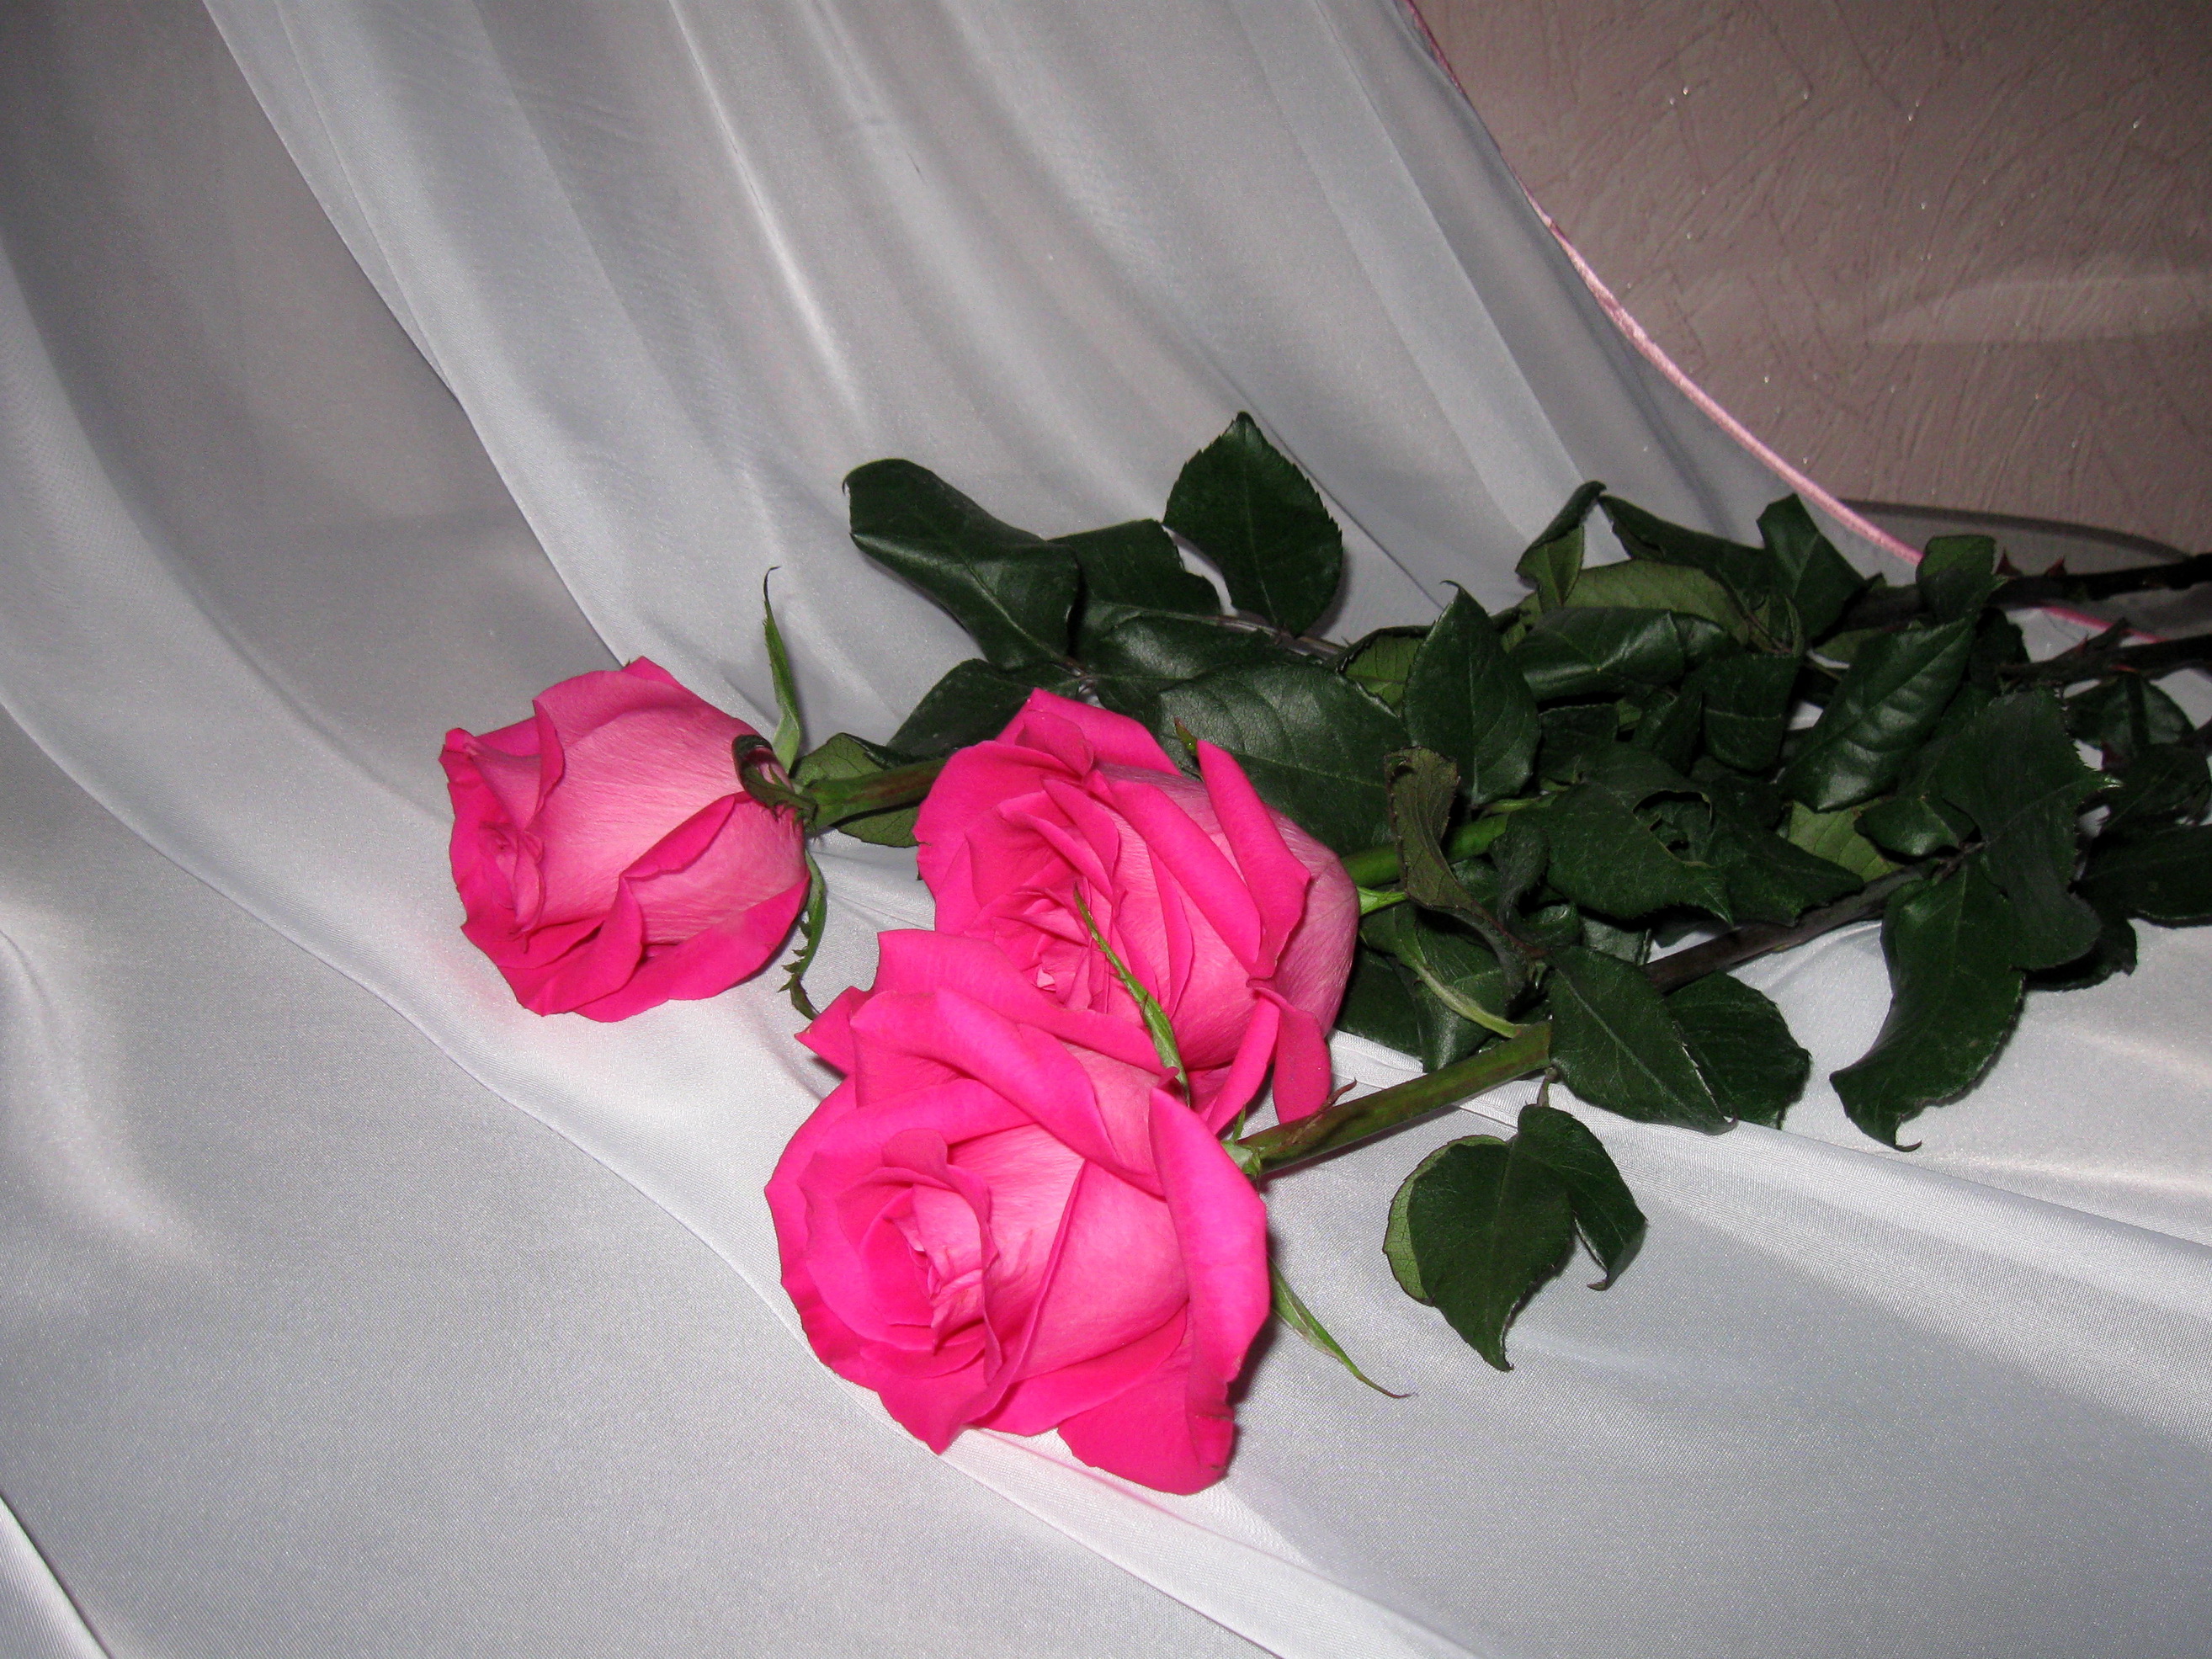 Фото реальных букетов цветов дома. Букет цветов на кровати. Букет роз дома. Букет роз на кровати. Букет цветов в домашней обстановке.